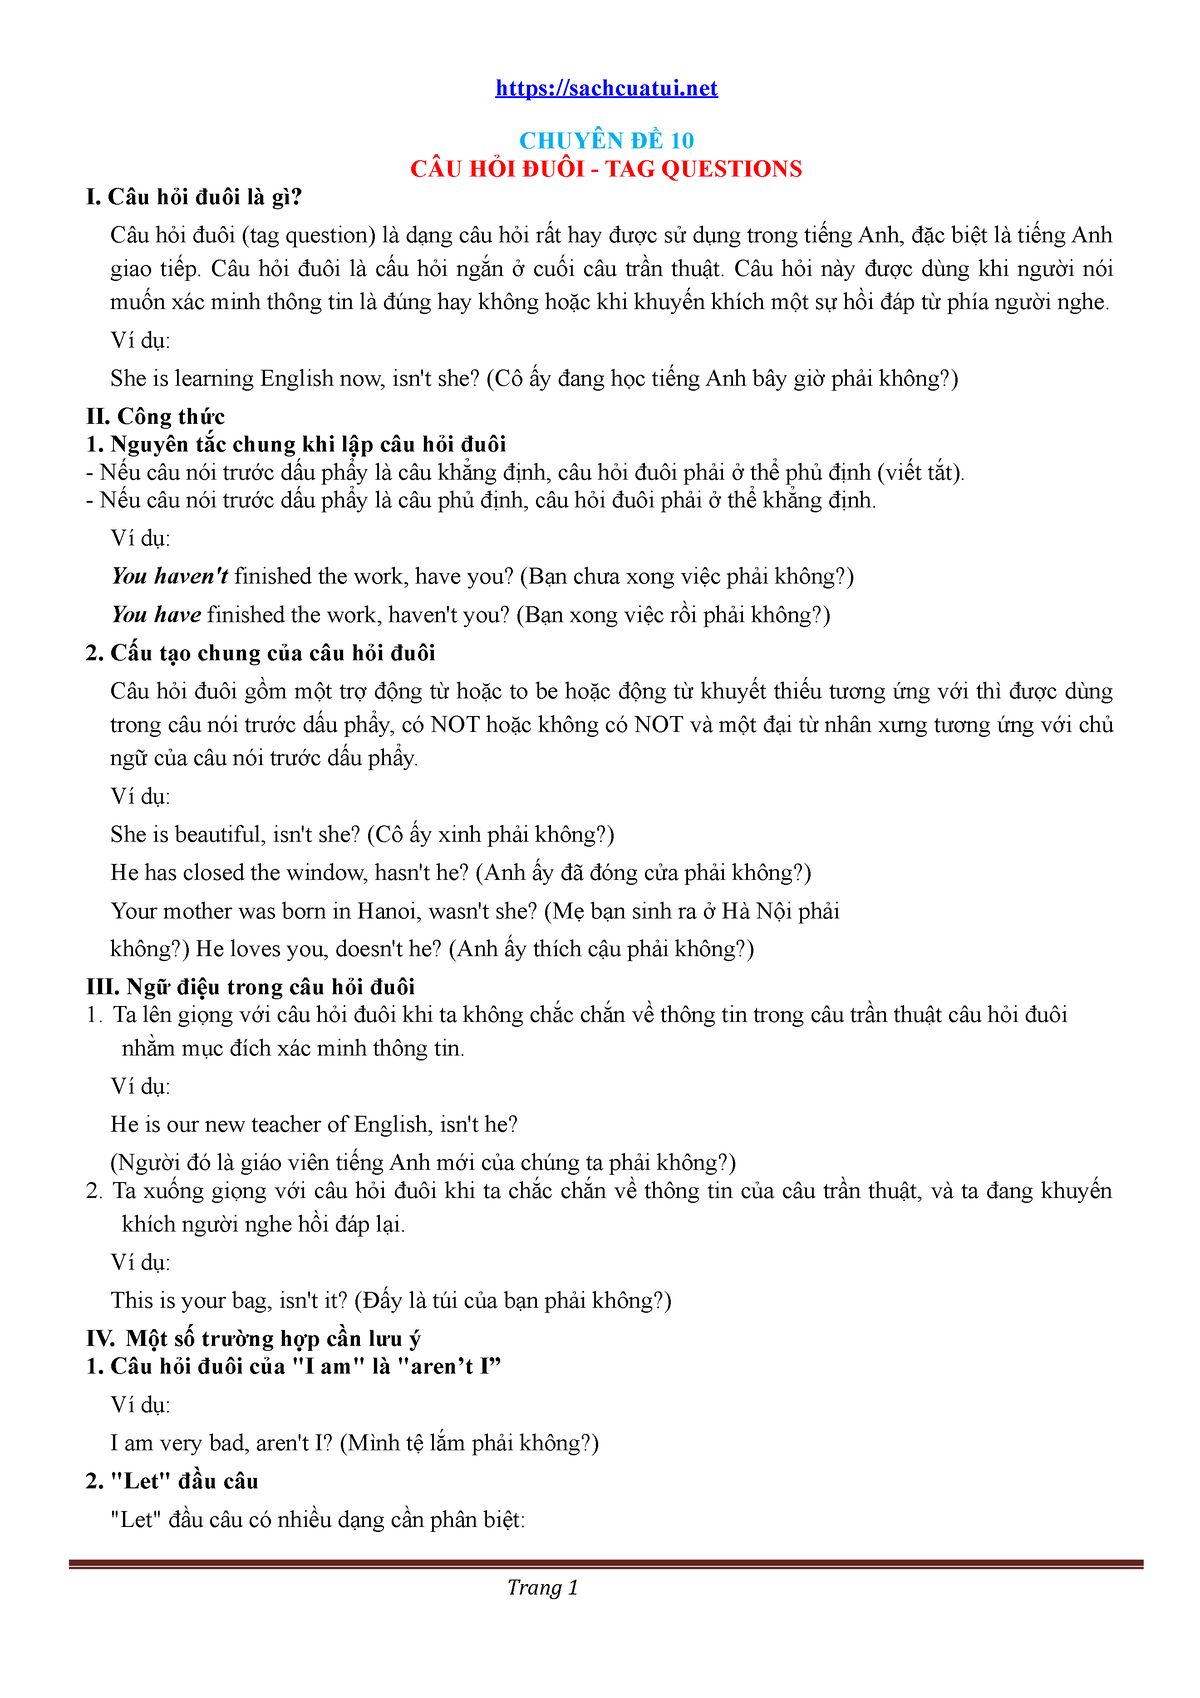 Tìm hiểu chuyên đề câu hỏi đuôi và cách sử dụng trong tiếng Anh